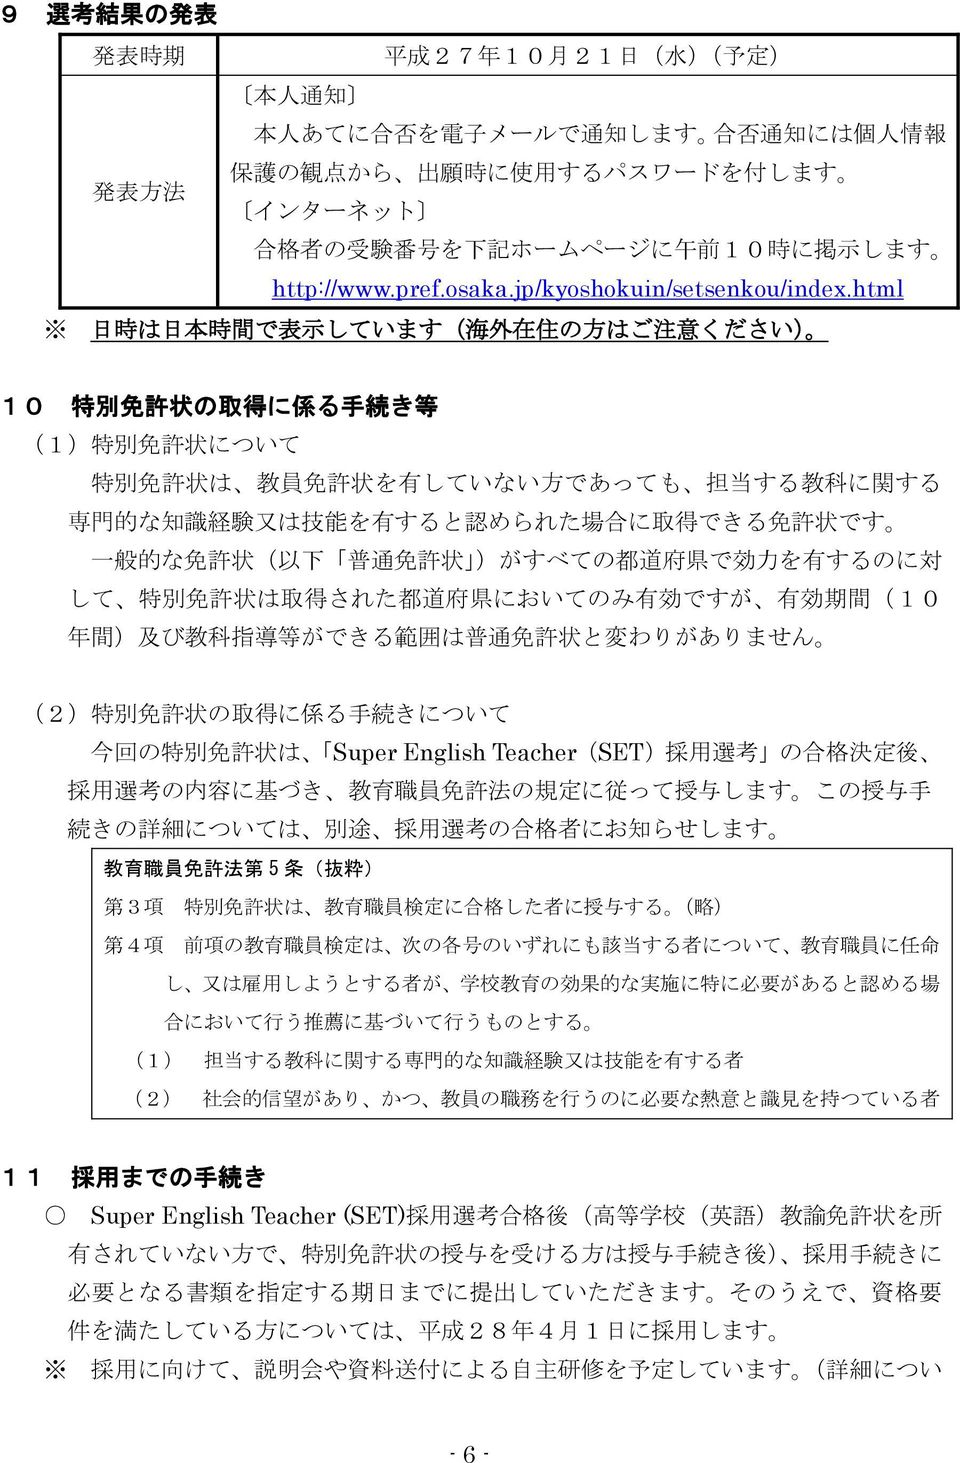 html 日 時 は 日 本 時 間 で 表 示 しています( 海 外 在 住 の 方 はご 注 意 ください) 10 特 別 免 許 状 の 取 得 に 係 る 手 続 き 等 (1) 特 別 免 許 状 について 特 別 免 許 状 は 教 員 免 許 状 を 有 していない 方 であっても 担 当 する 教 科 に 関 する 専 門 的 な 知 識 経 験 又 は 技 能 を 有 すると